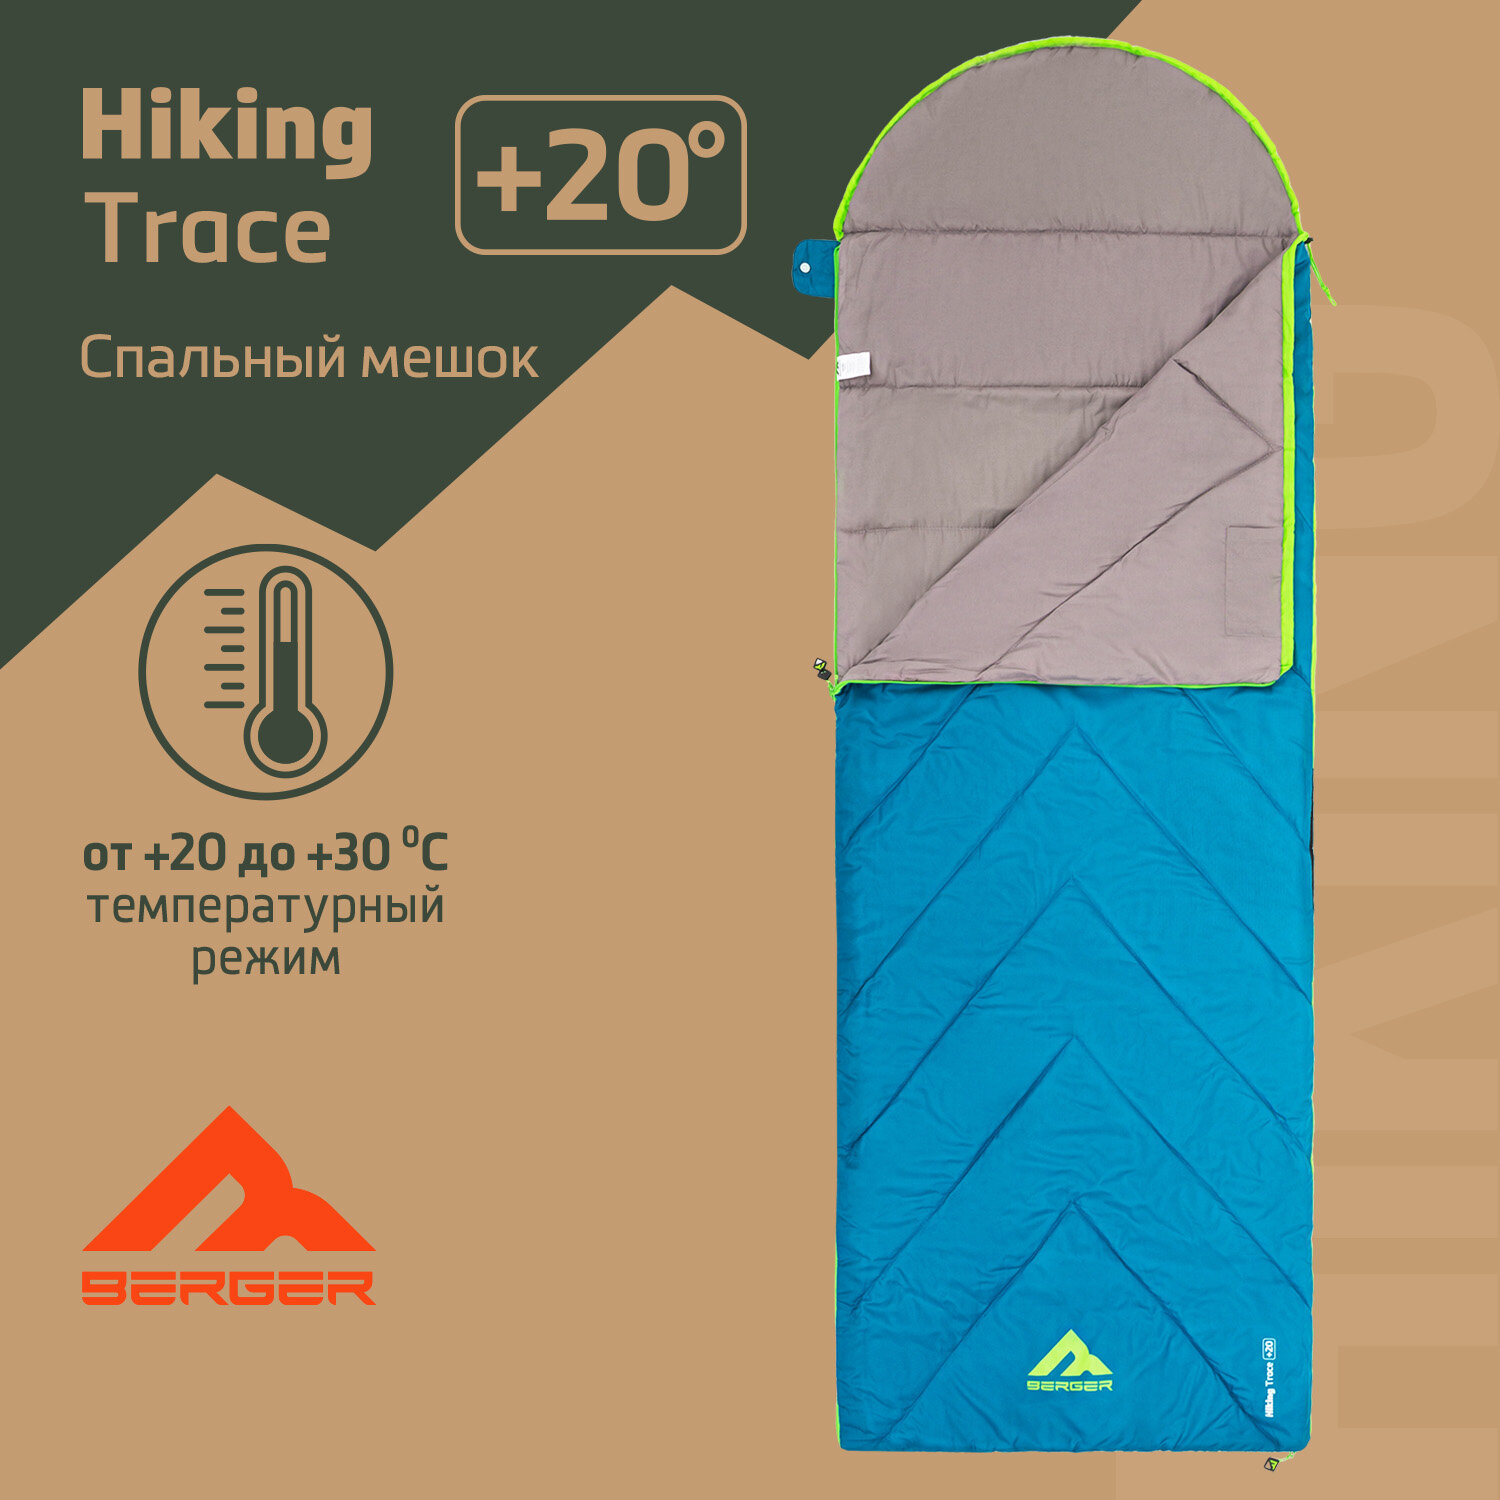 Спальный мешок Berger Hiking Trace +20 BHT24SB-01, бирюзовый